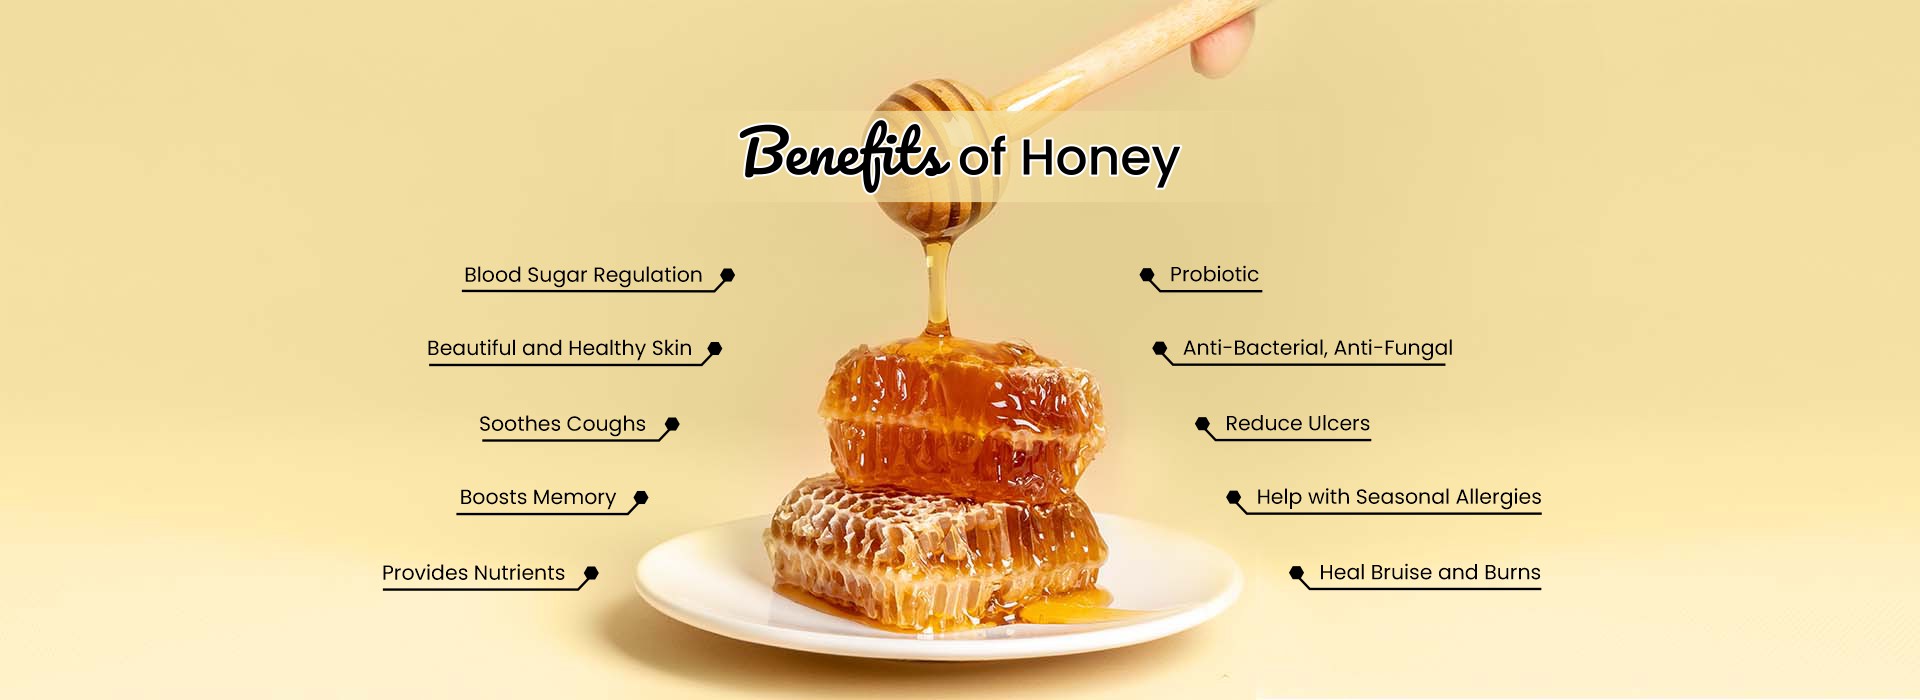 01-honey-benefits